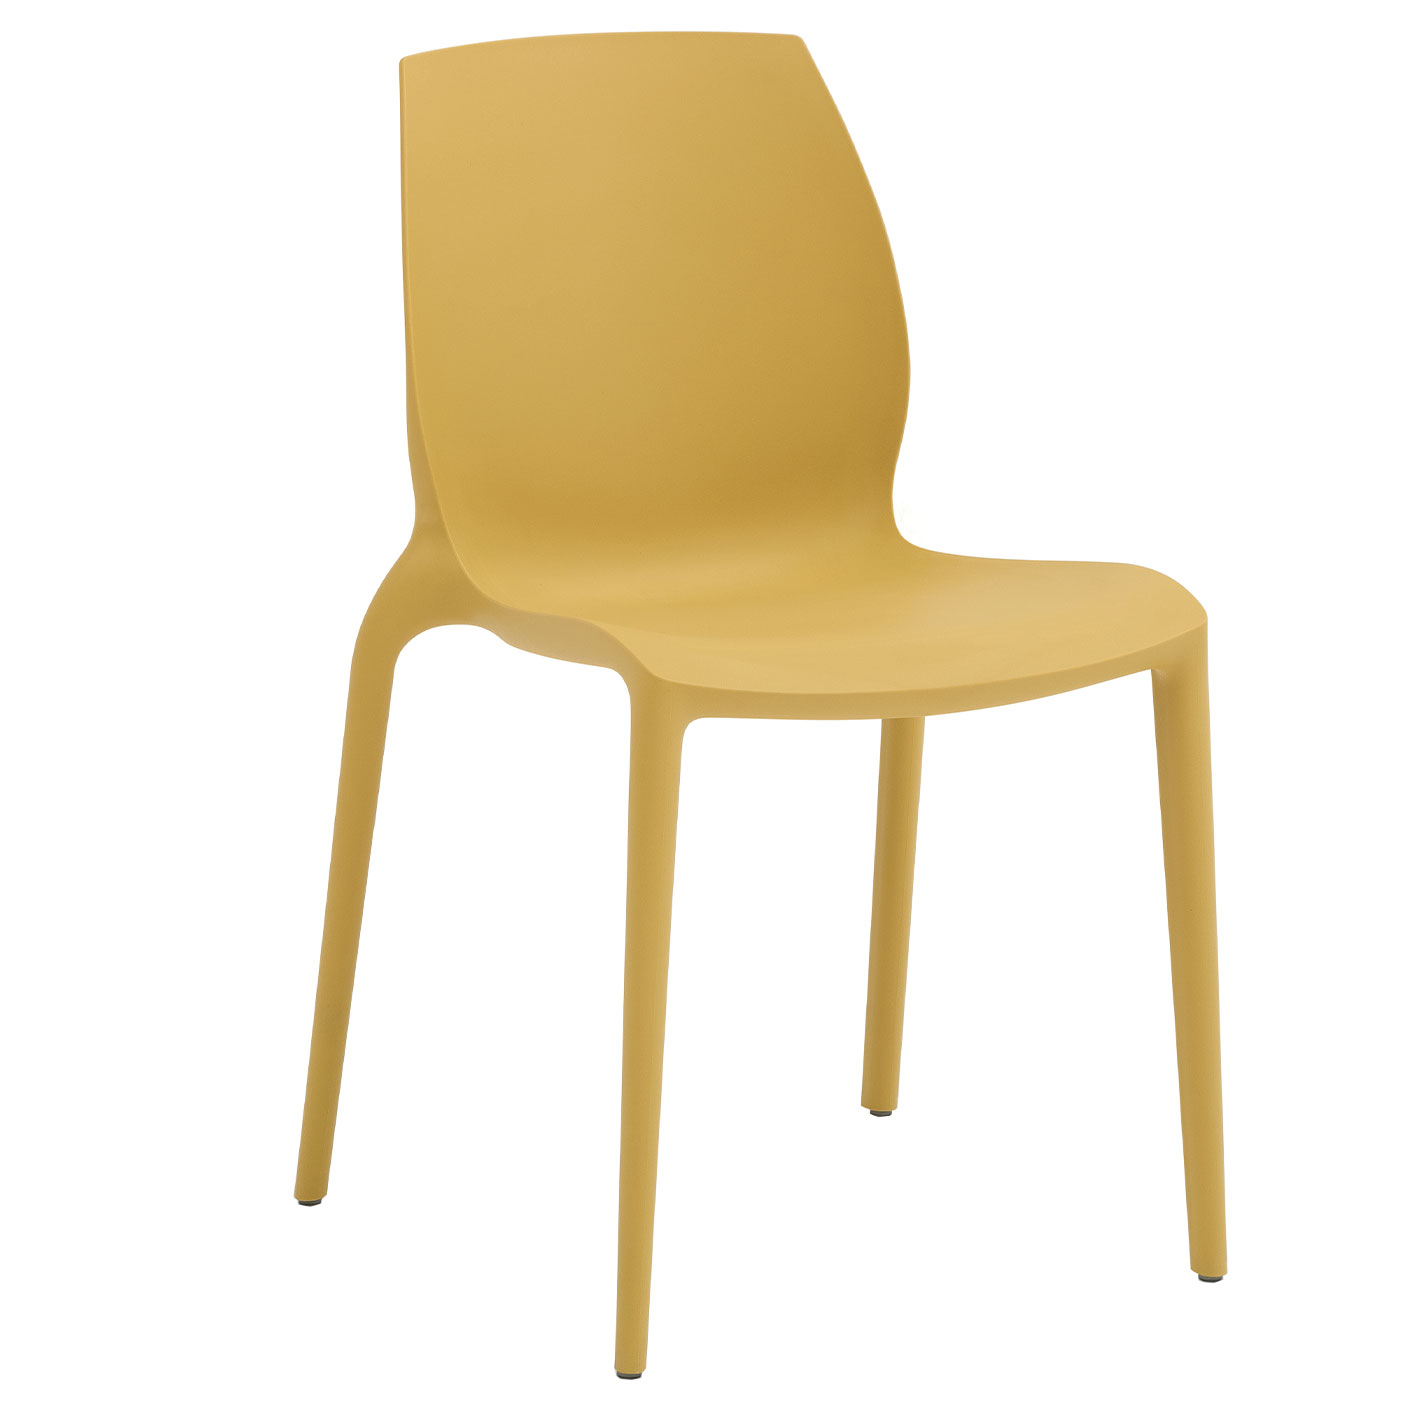 Tische & Stühle - HIDRA Stuhl